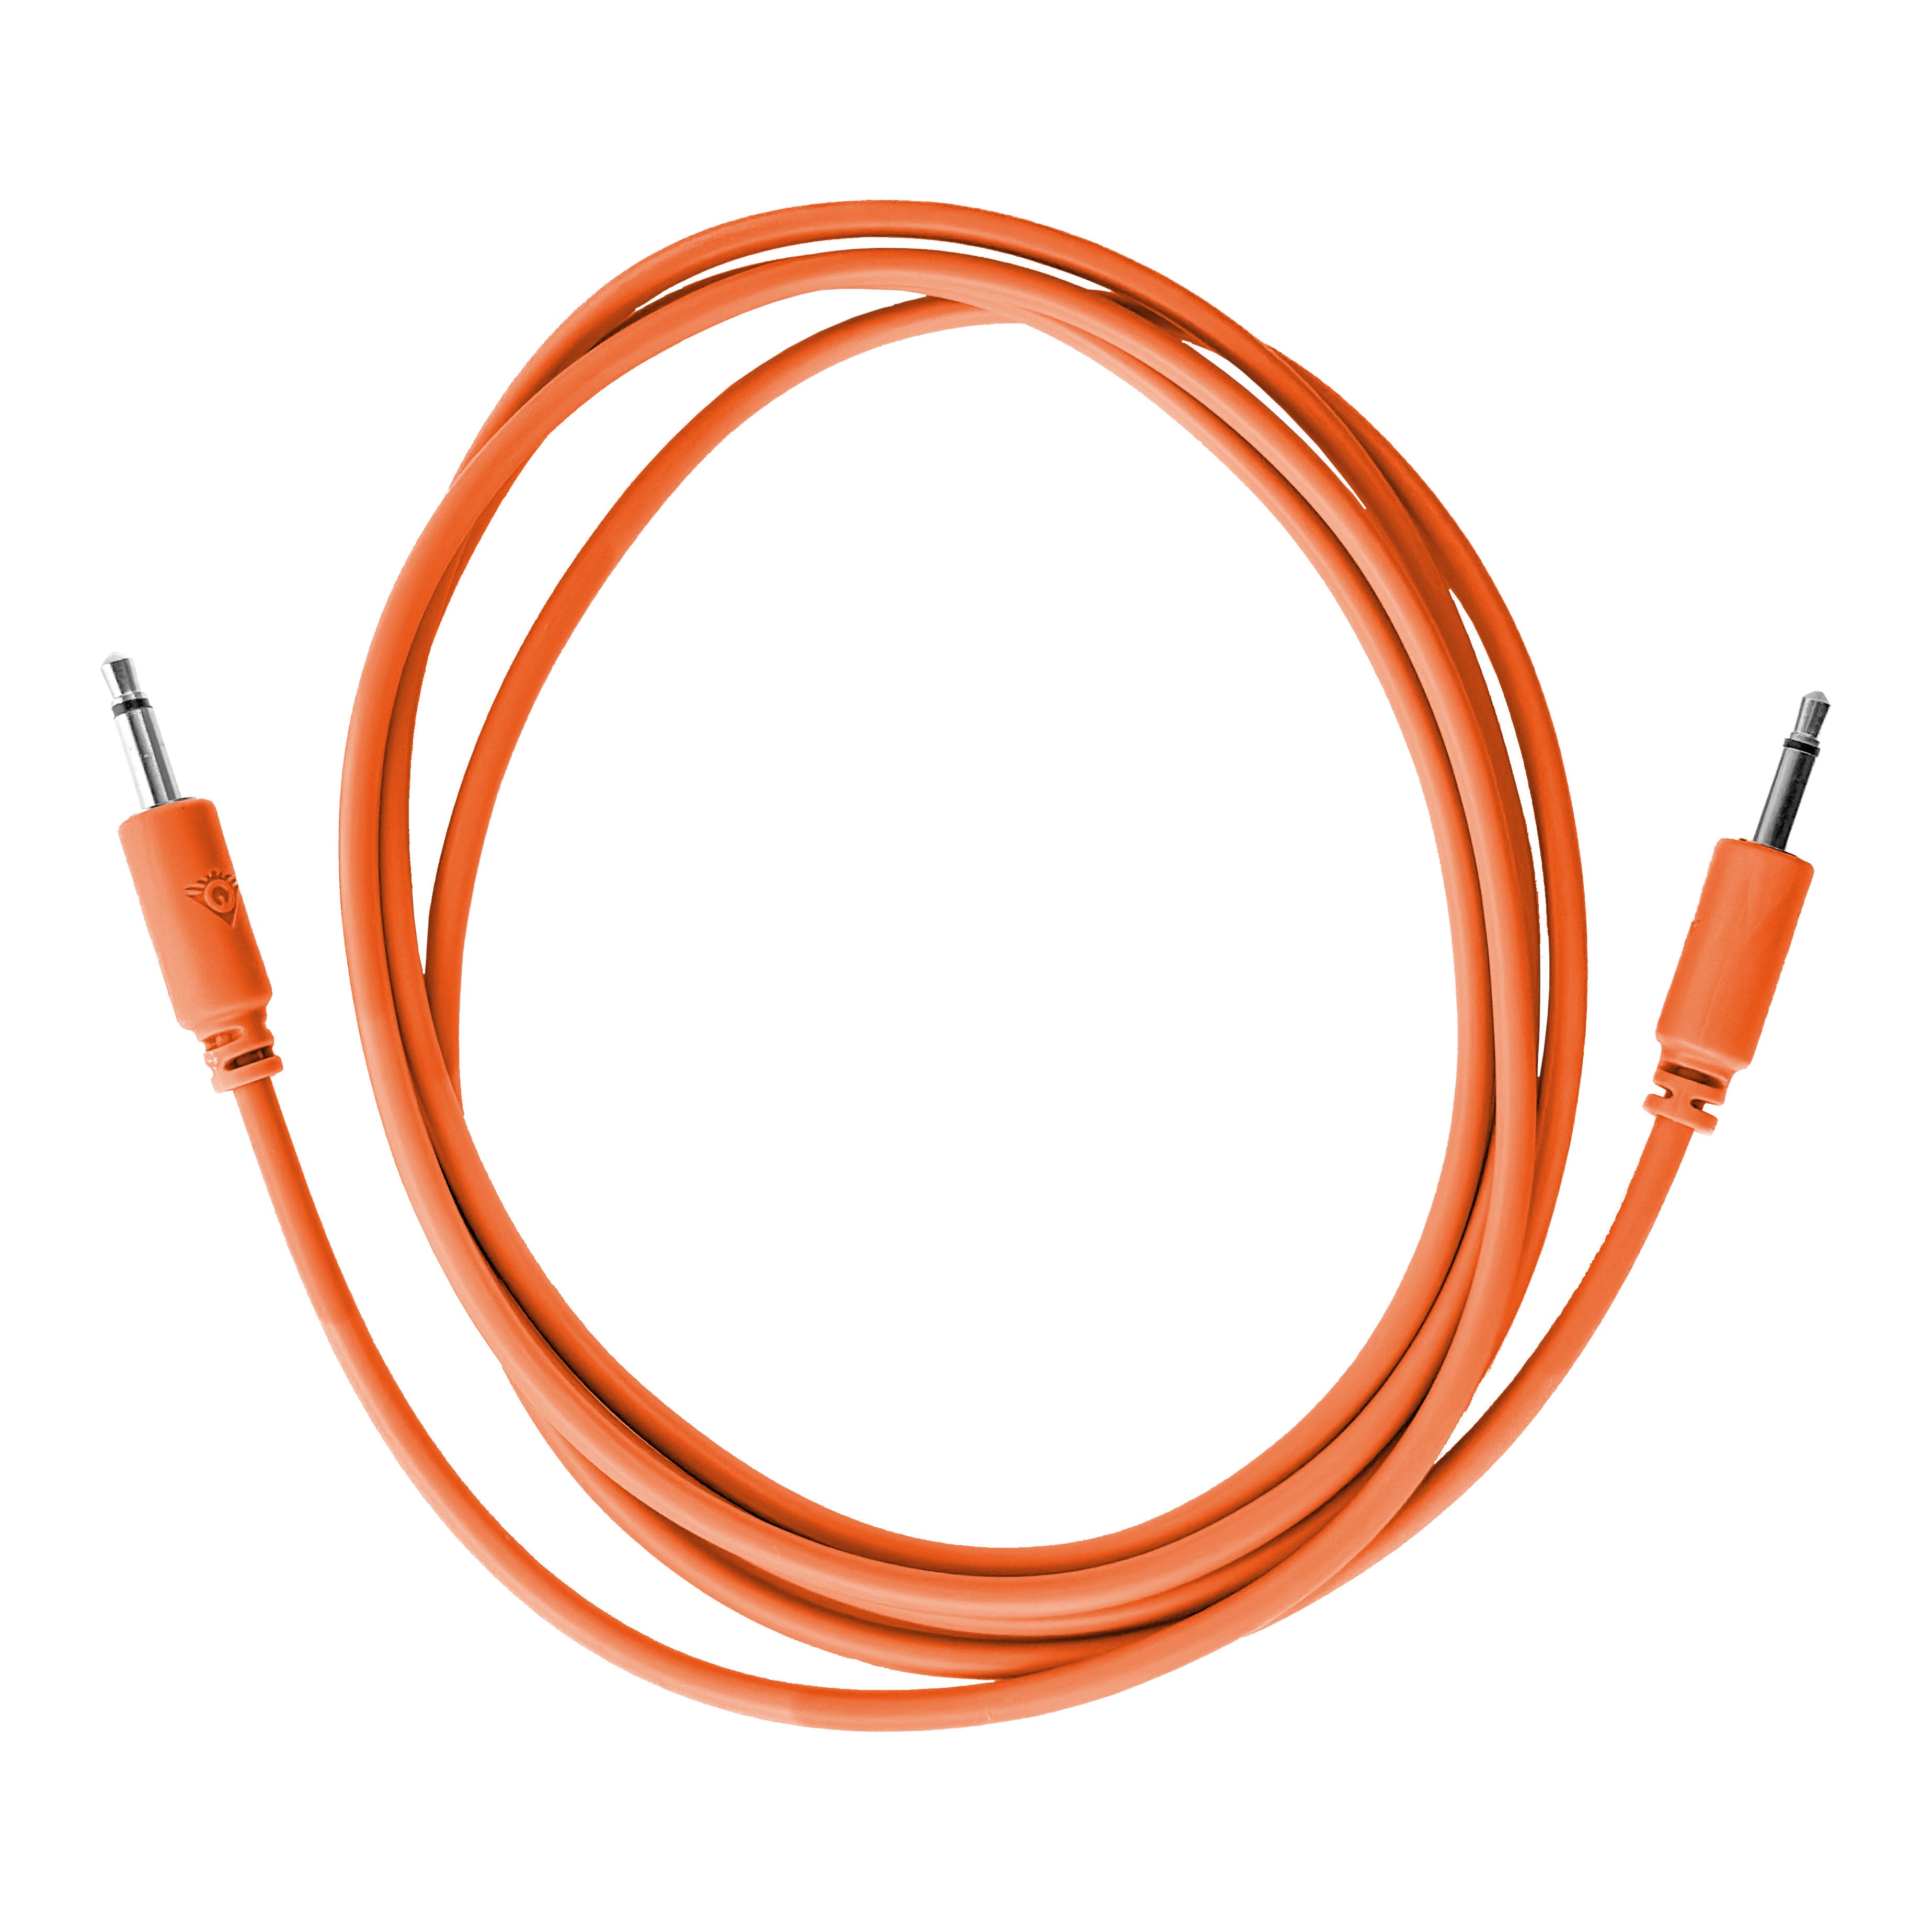 Black Market Modular 3.5mm Patch Cable - 150cm/60" - Orange View 1